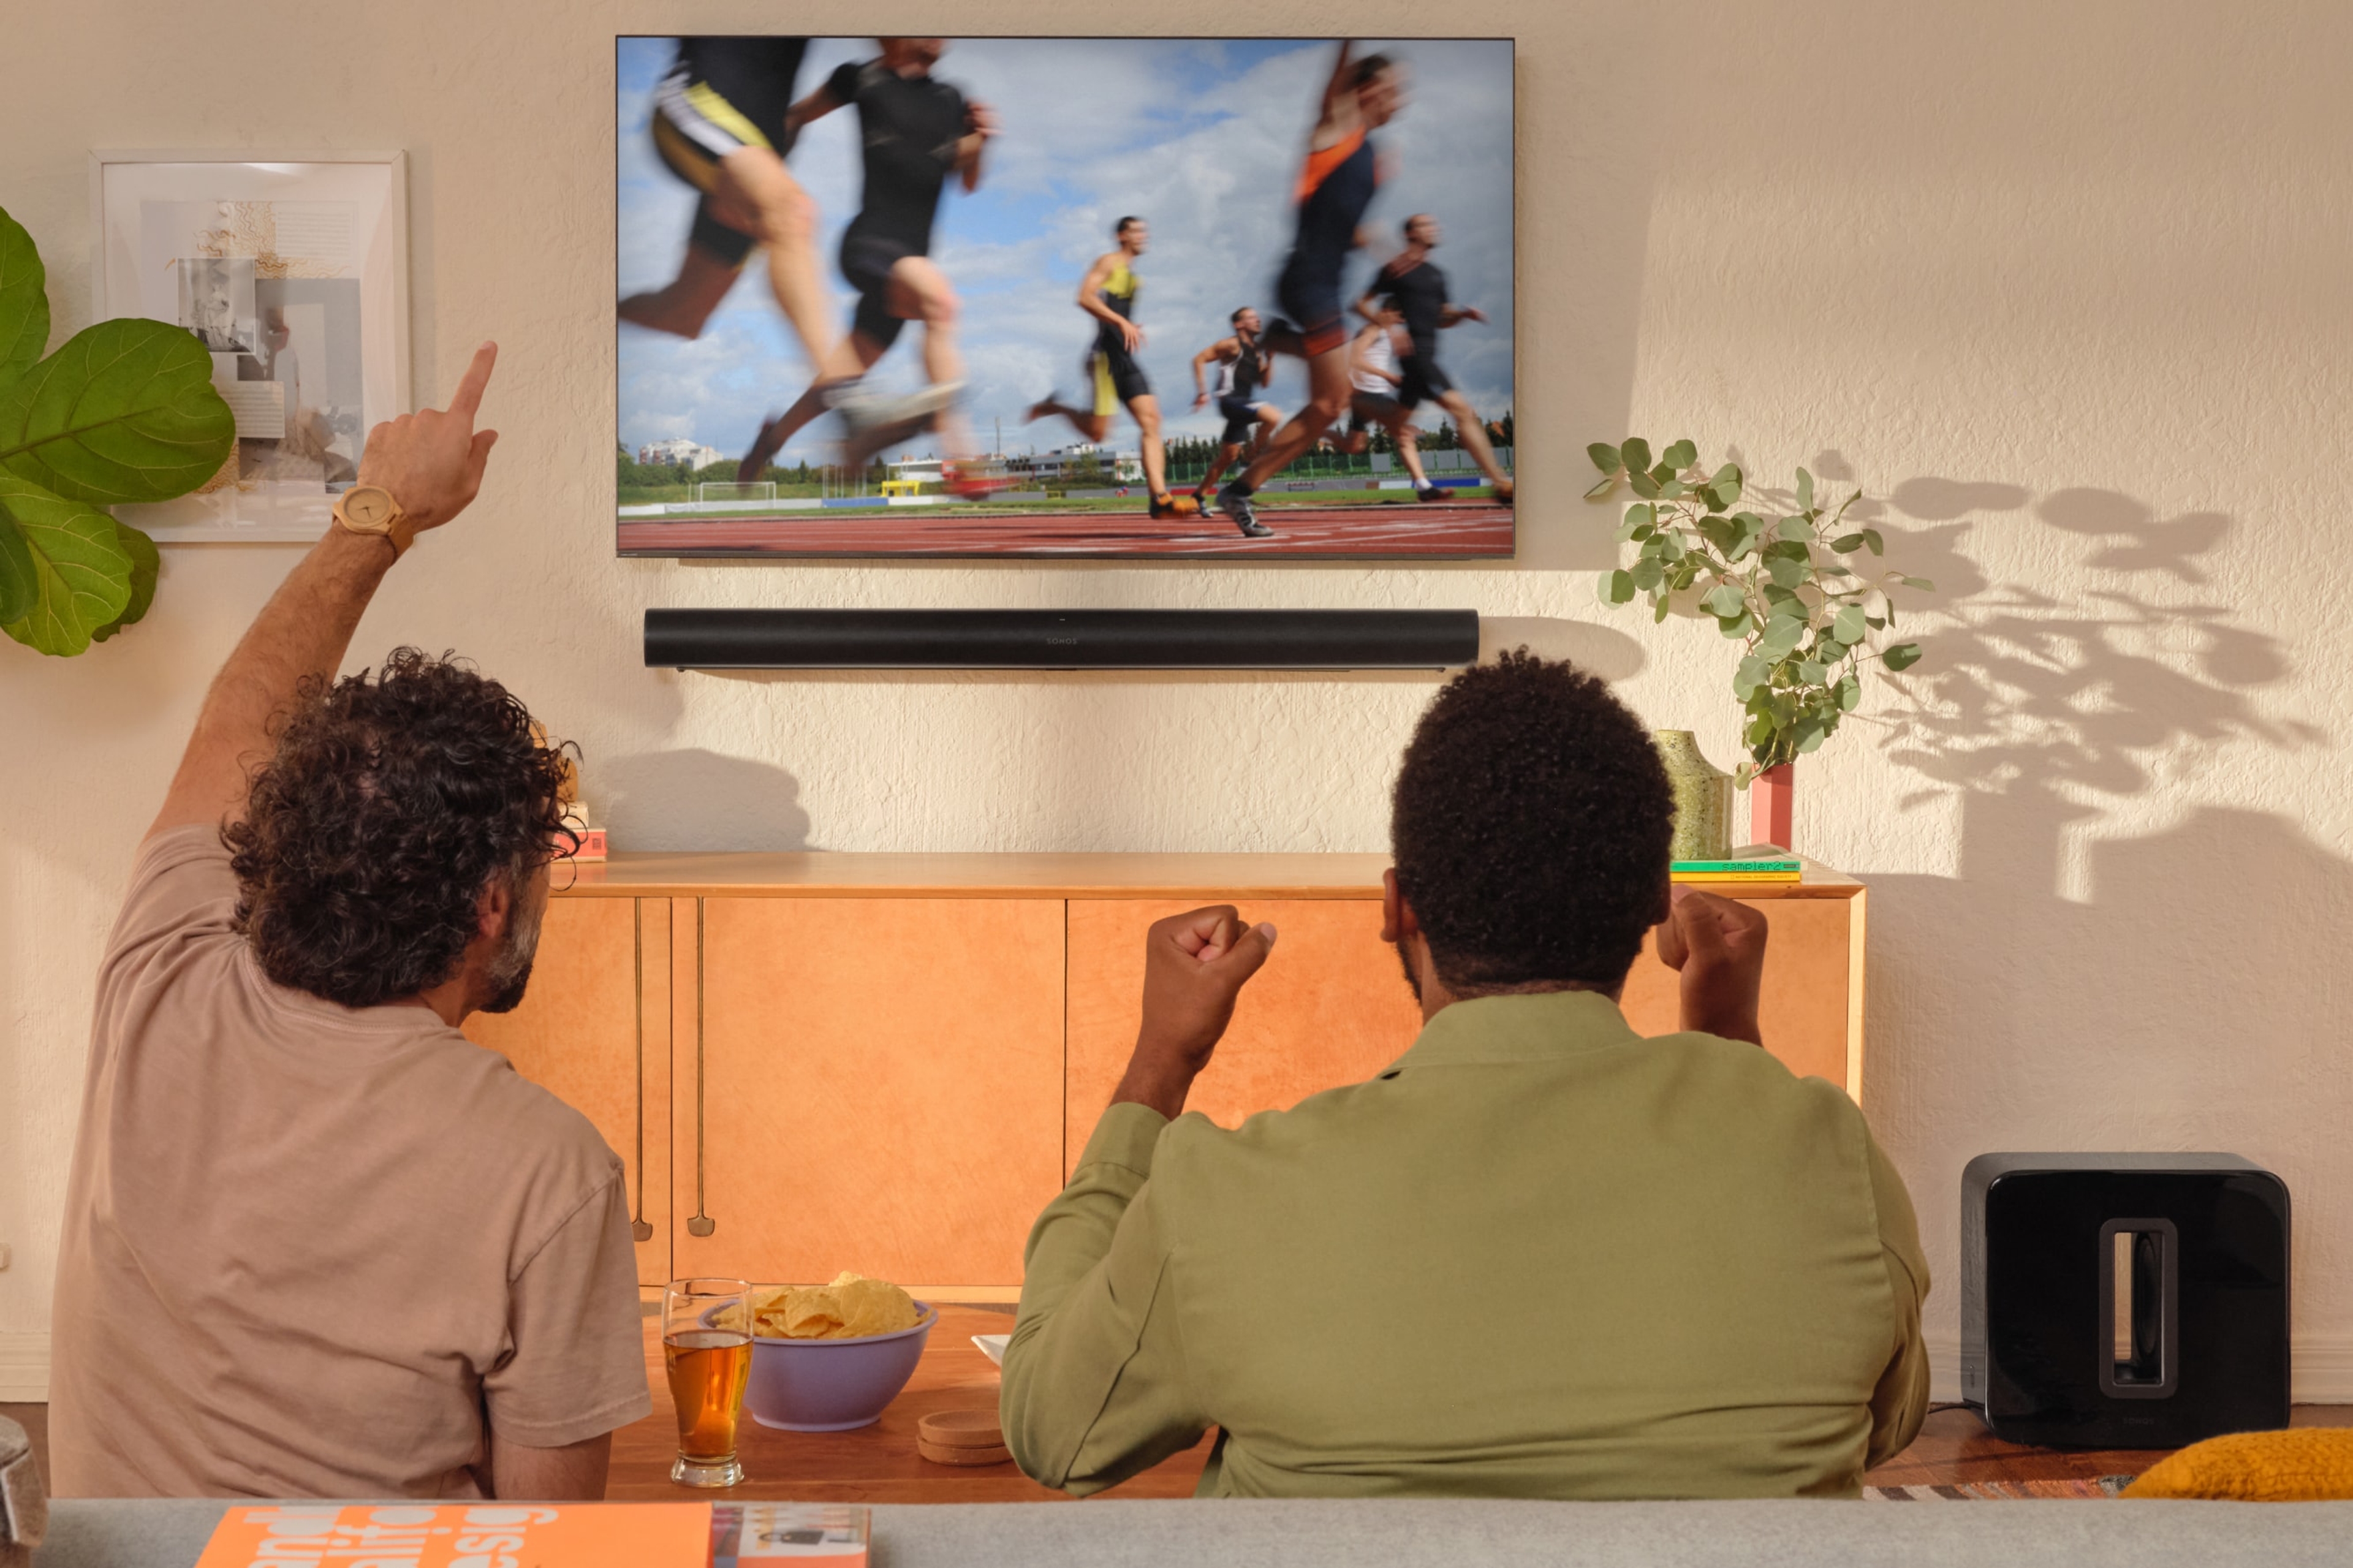 Dos personas viendo una competición de atletismo en la tele con una Arc y un Sub en negro